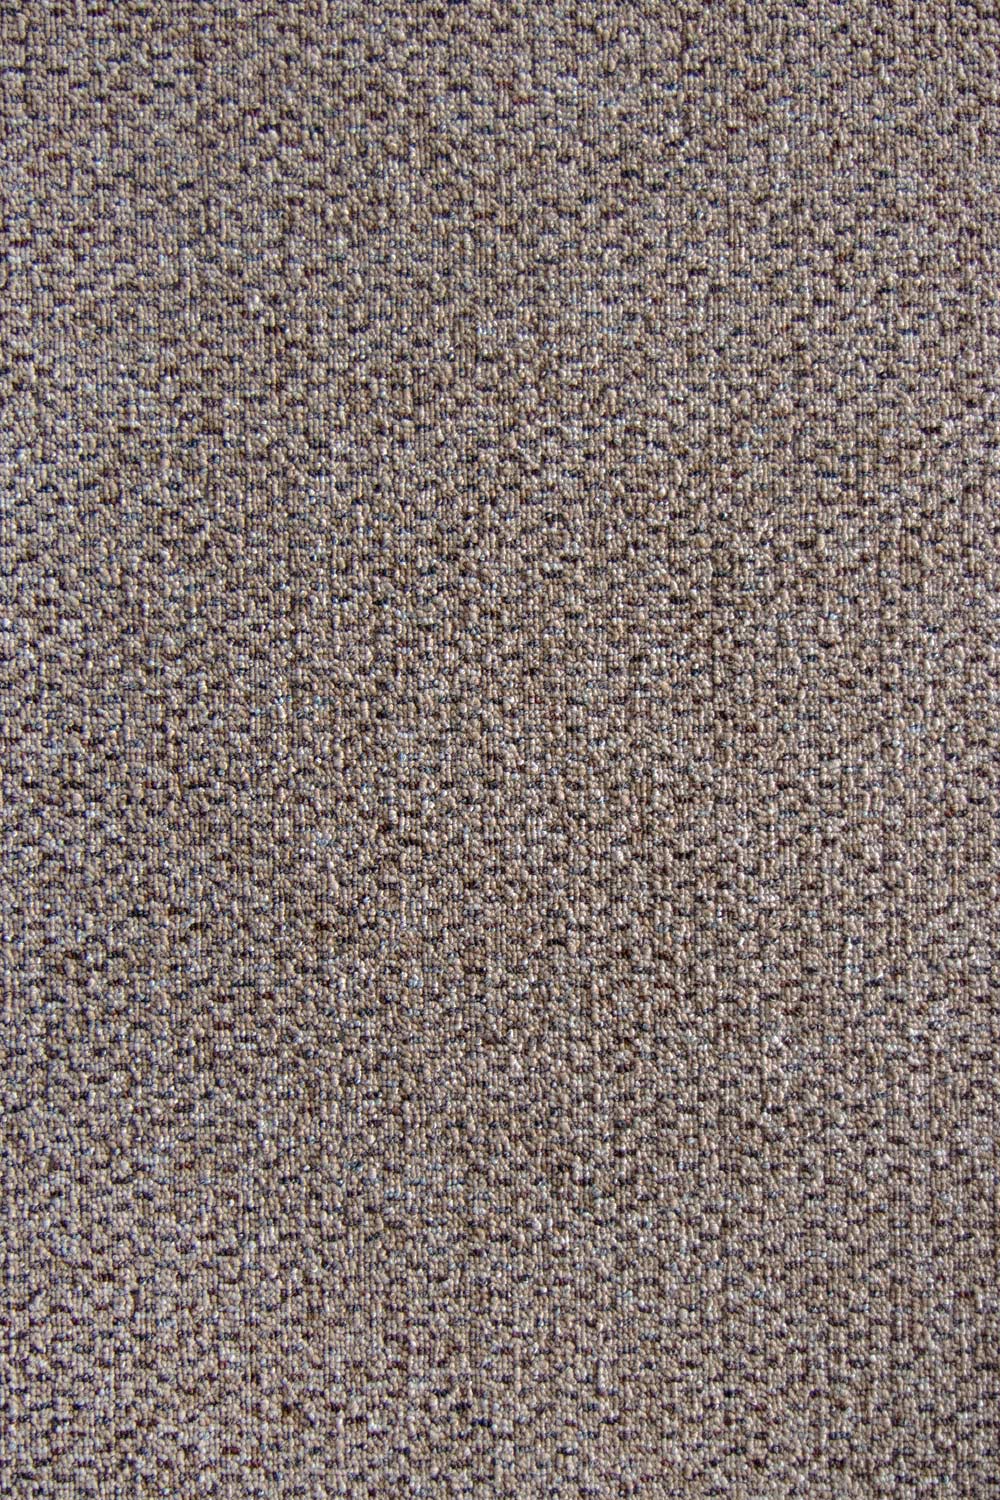 Metrážny koberec Bolton 2114 400 cm